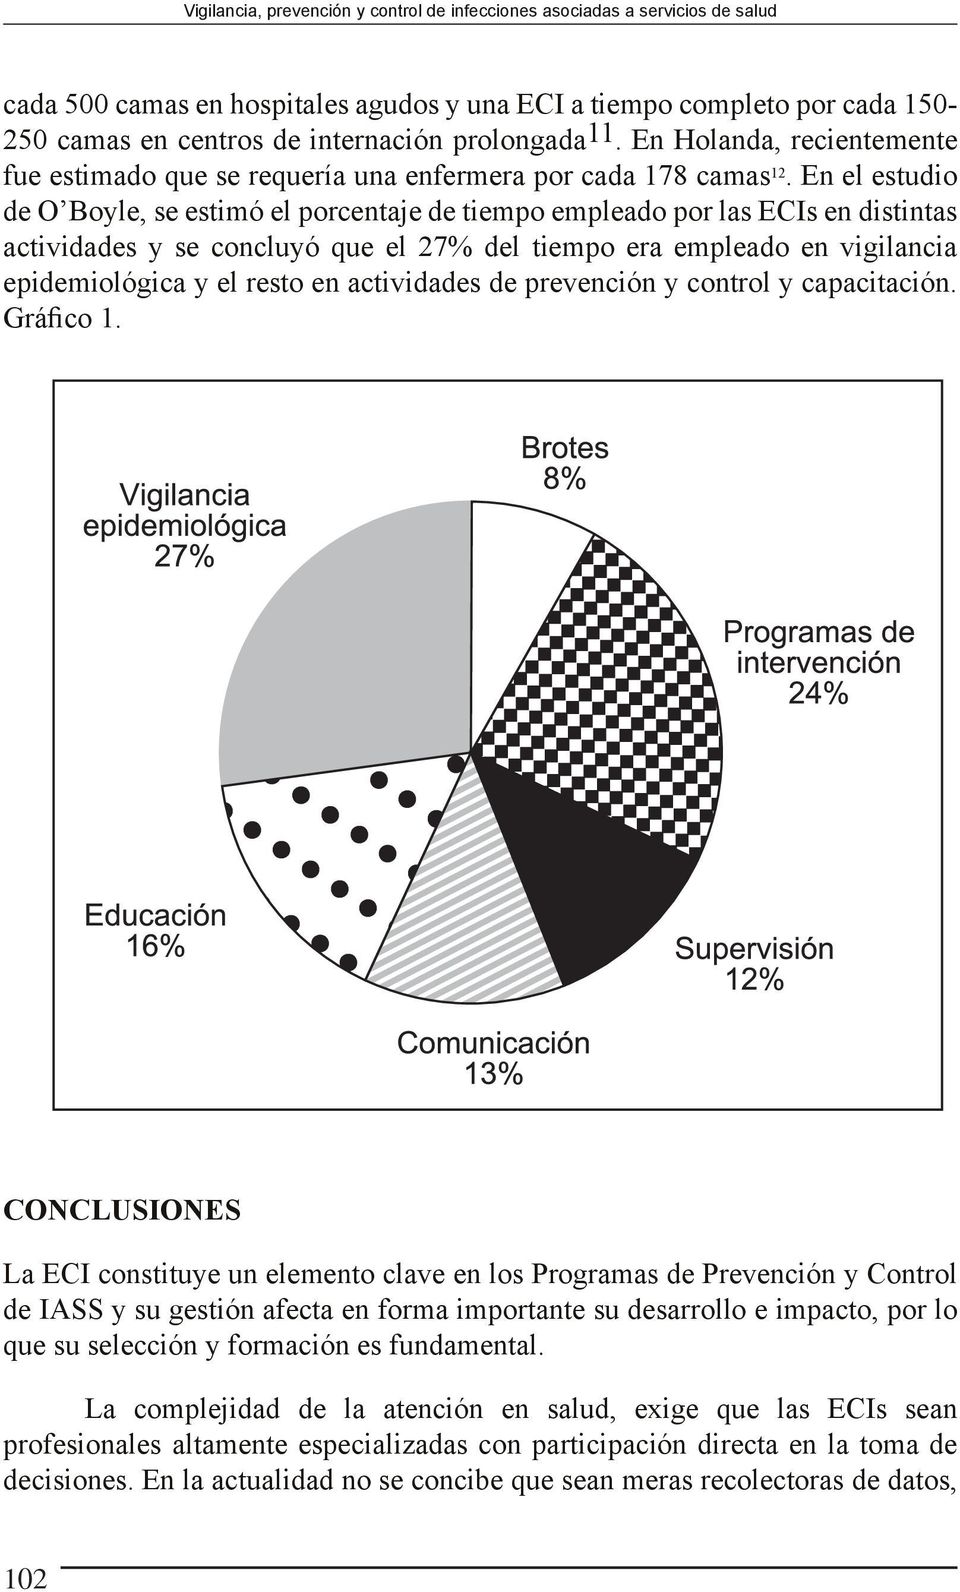 En el estudio de O Boyle, se estimó el porcentaje de tiempo empleado por las ECIs en distintas actividades y se concluyó que el 27% del tiempo era empleado en vigilancia epidemiológica y el resto en